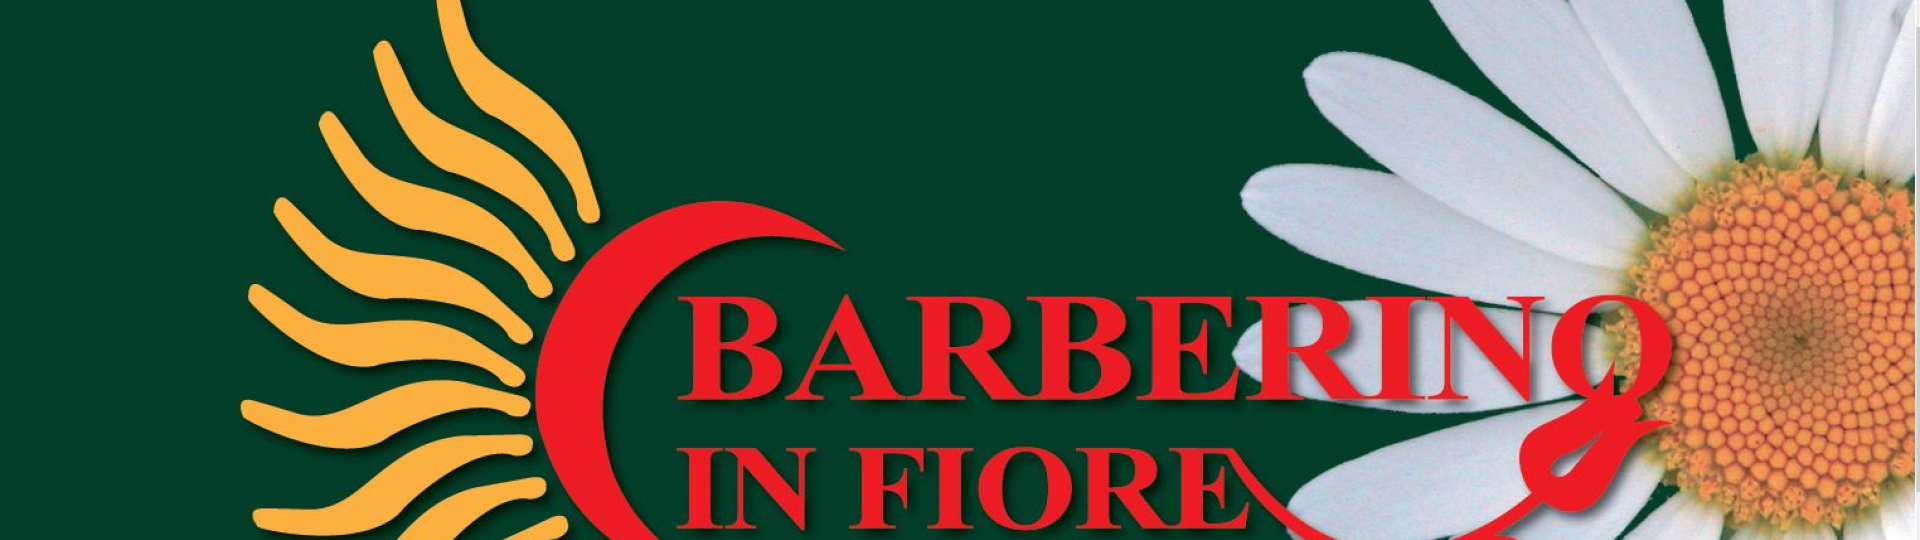 Barberino in Fiore_banner